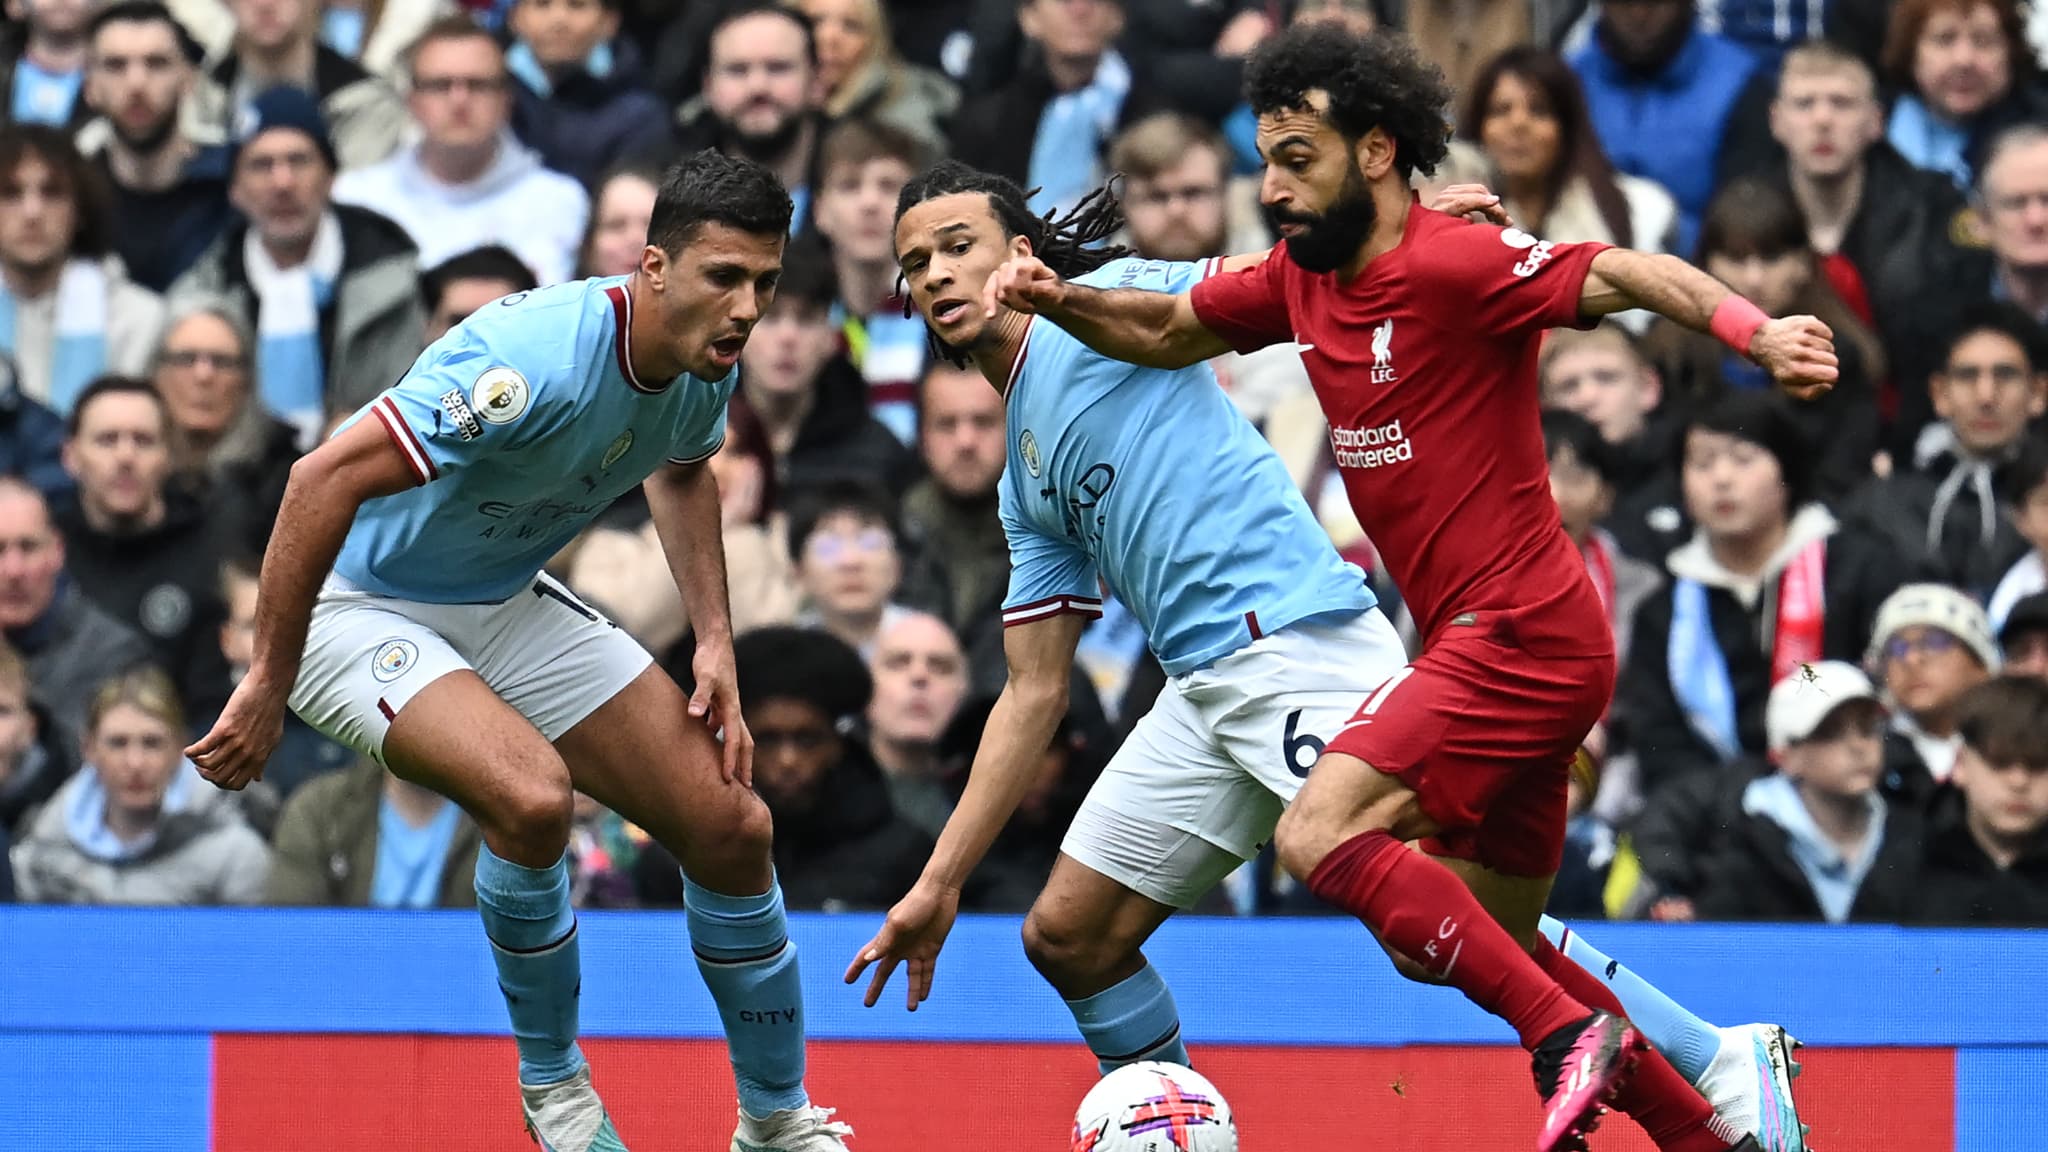 Diretta – Manchester City – Liverpool: la situazione attuale all’Etihad Stadium, i marcatori Salah e Alvarez